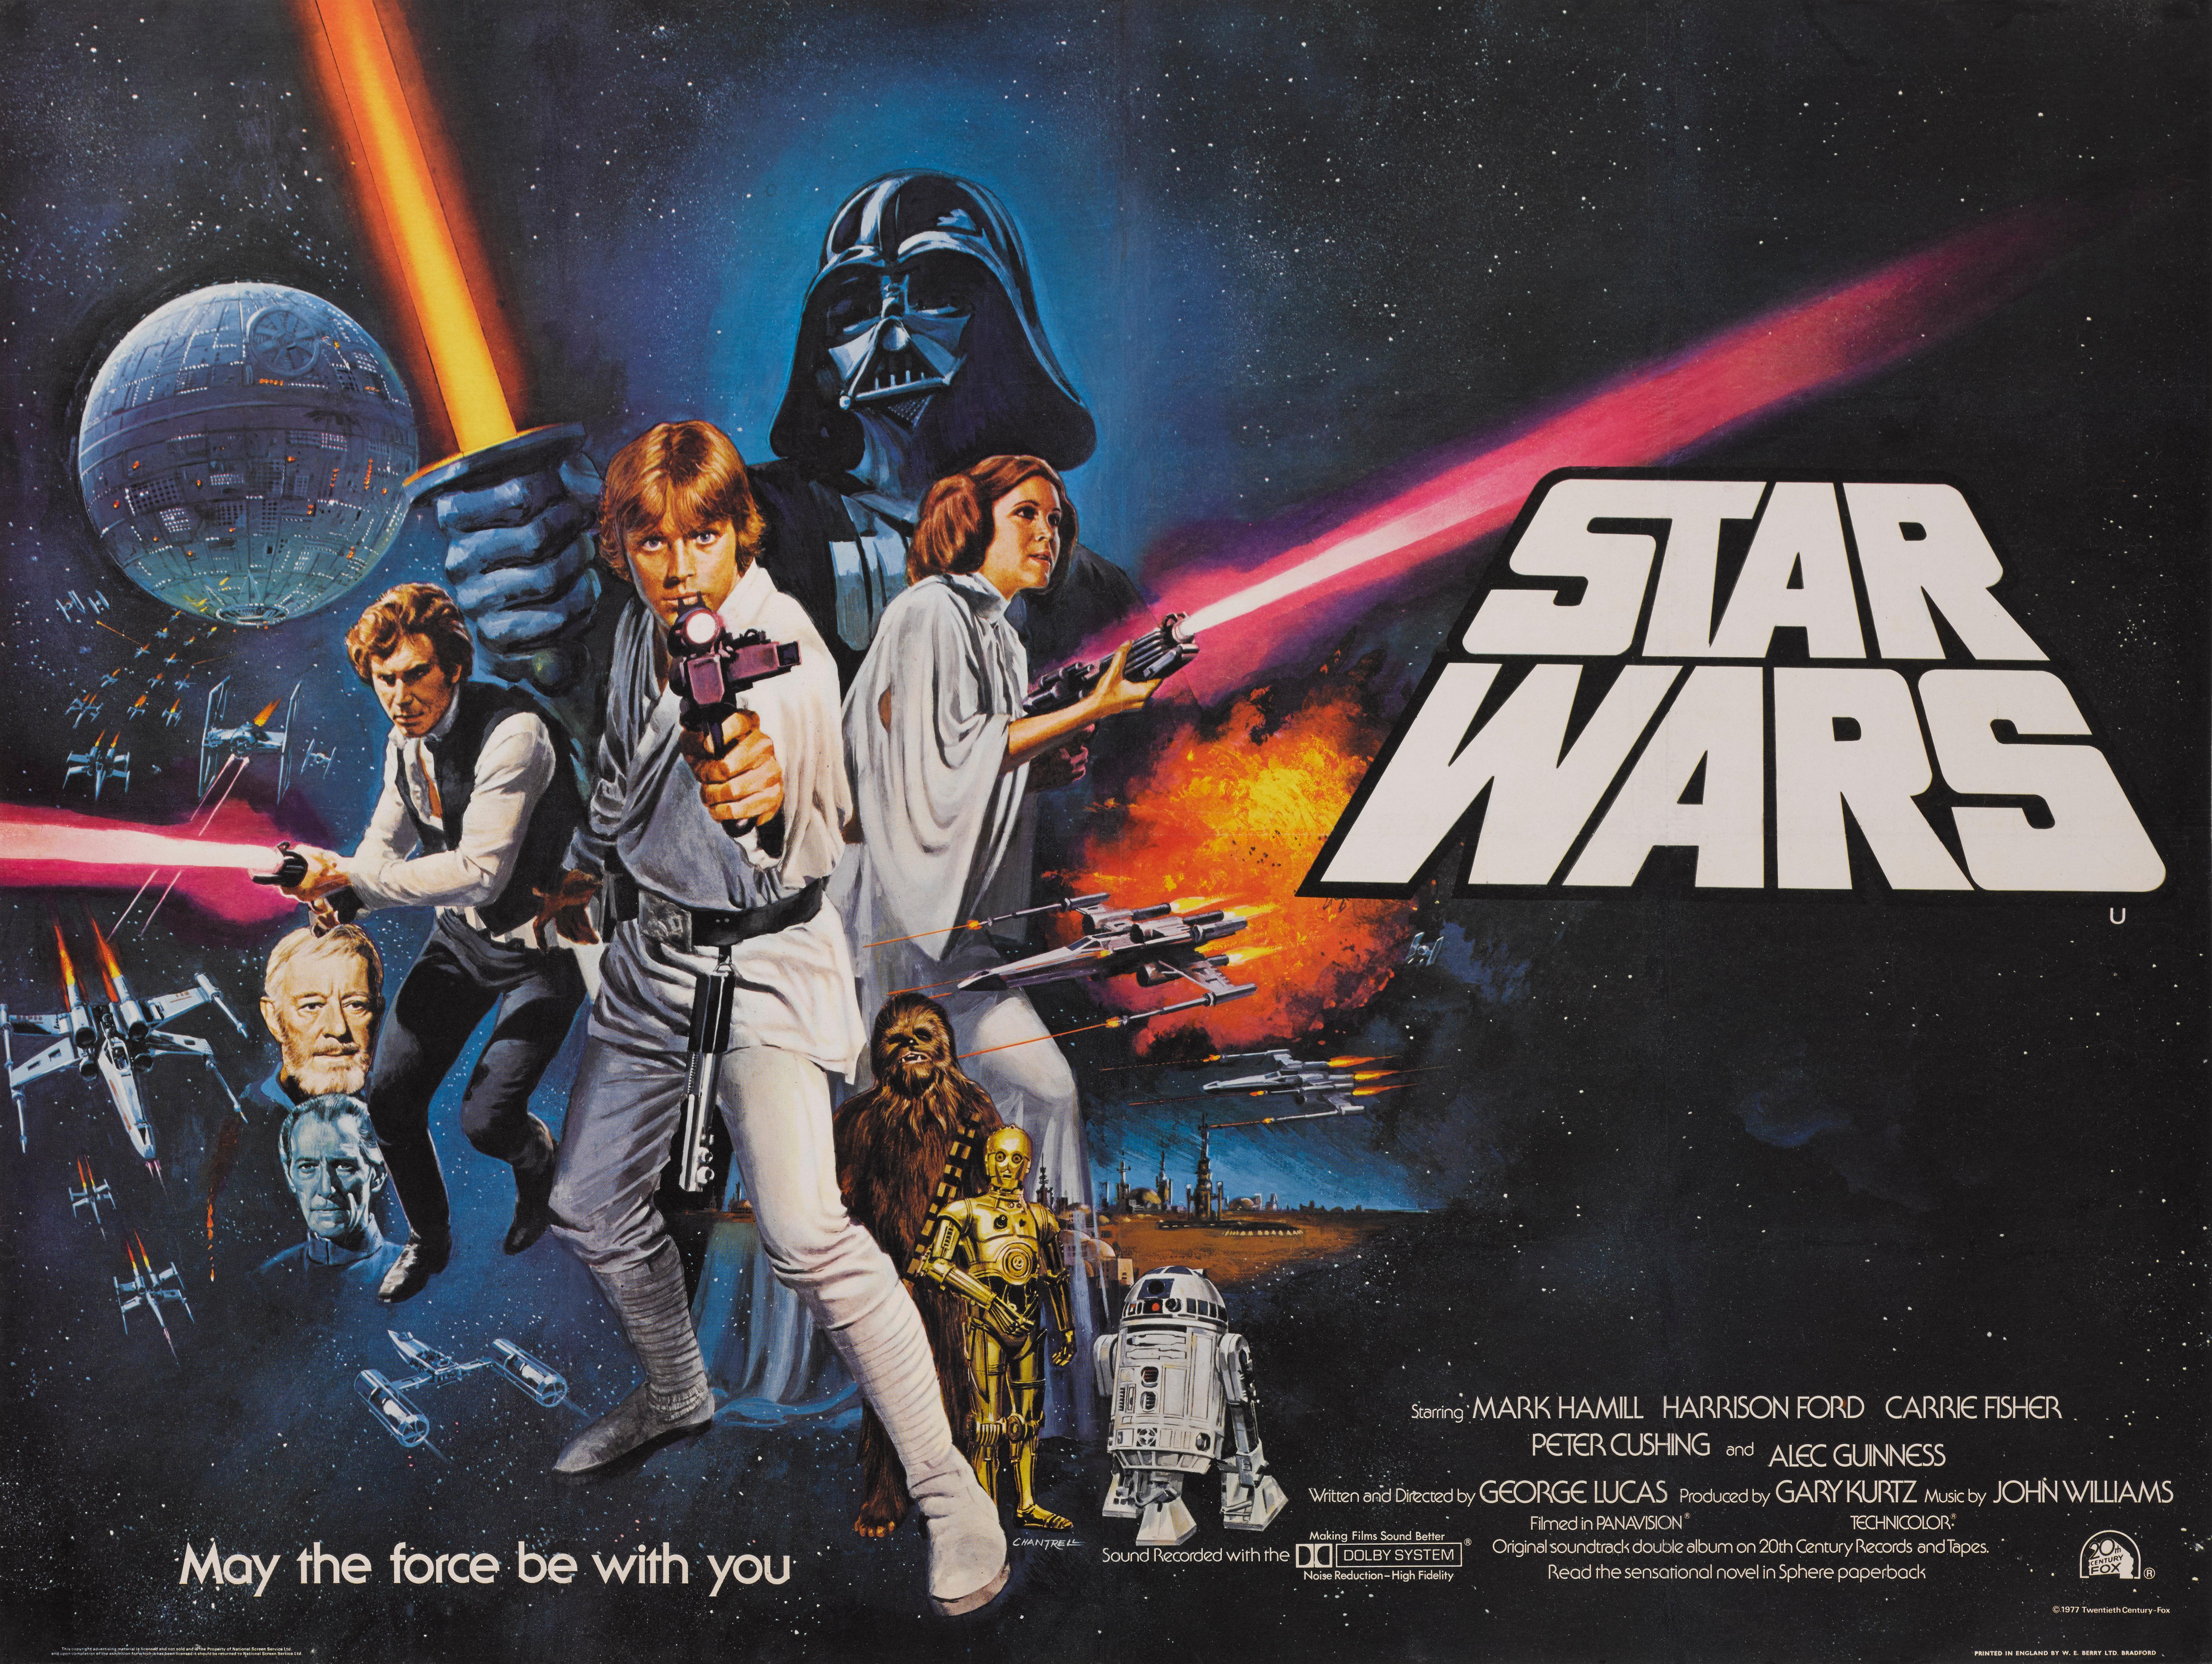 Originales britisches Filmplakat für Star Wars 1977.
George Lucas beauftragte Tom William Chantrell (1916-2001) mit der Gestaltung dieses britischen Plakats. Das Endergebnis gefiel Lucas so gut, dass er es für das C.C.-Plakat im amerikanischen Stil